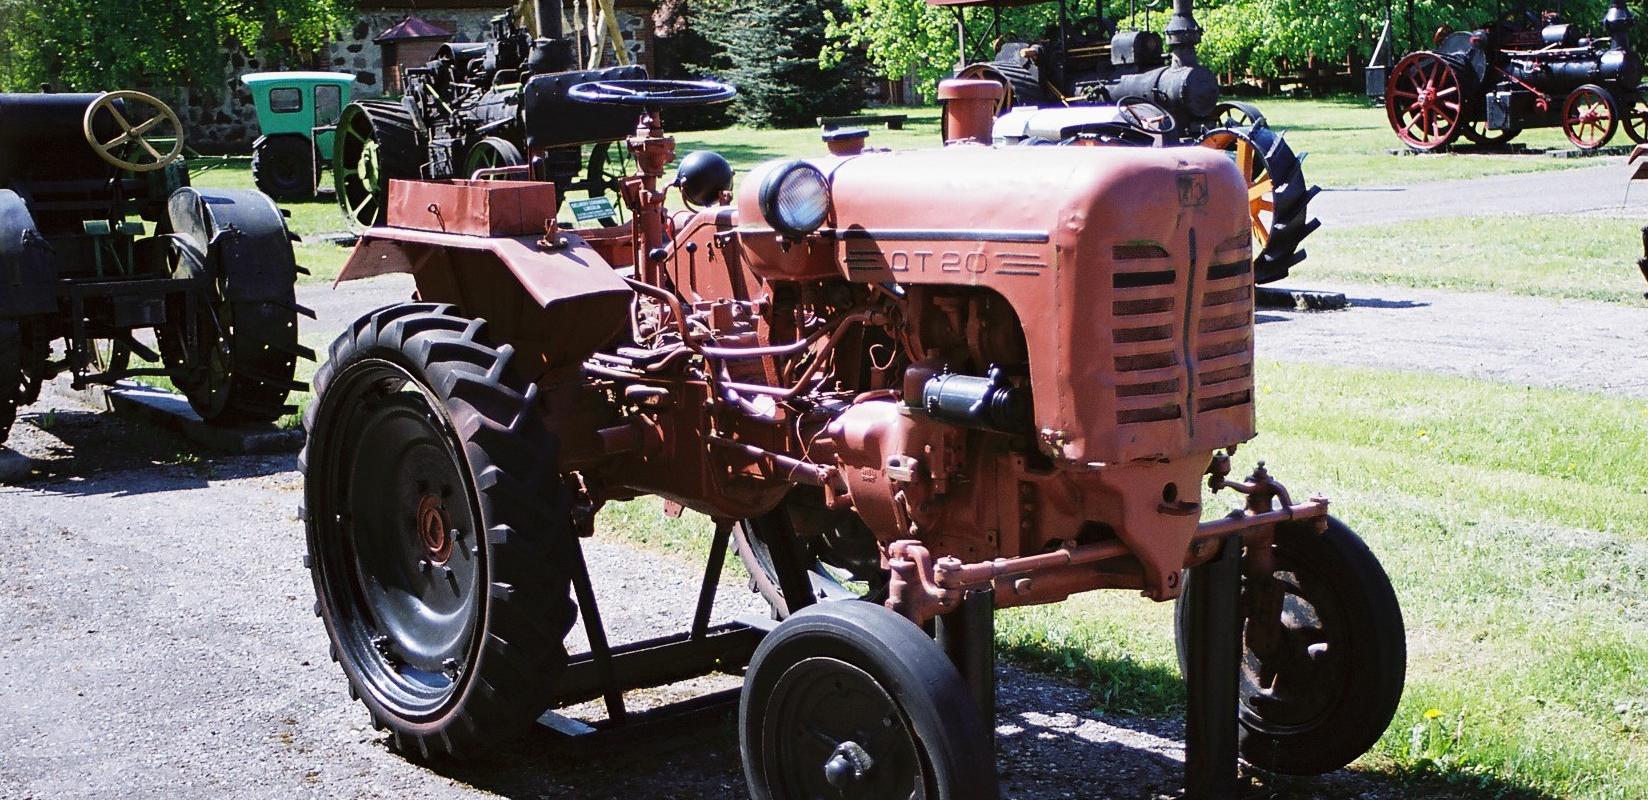 Viron maatalousmuseon vanhojen traktorien näyttely